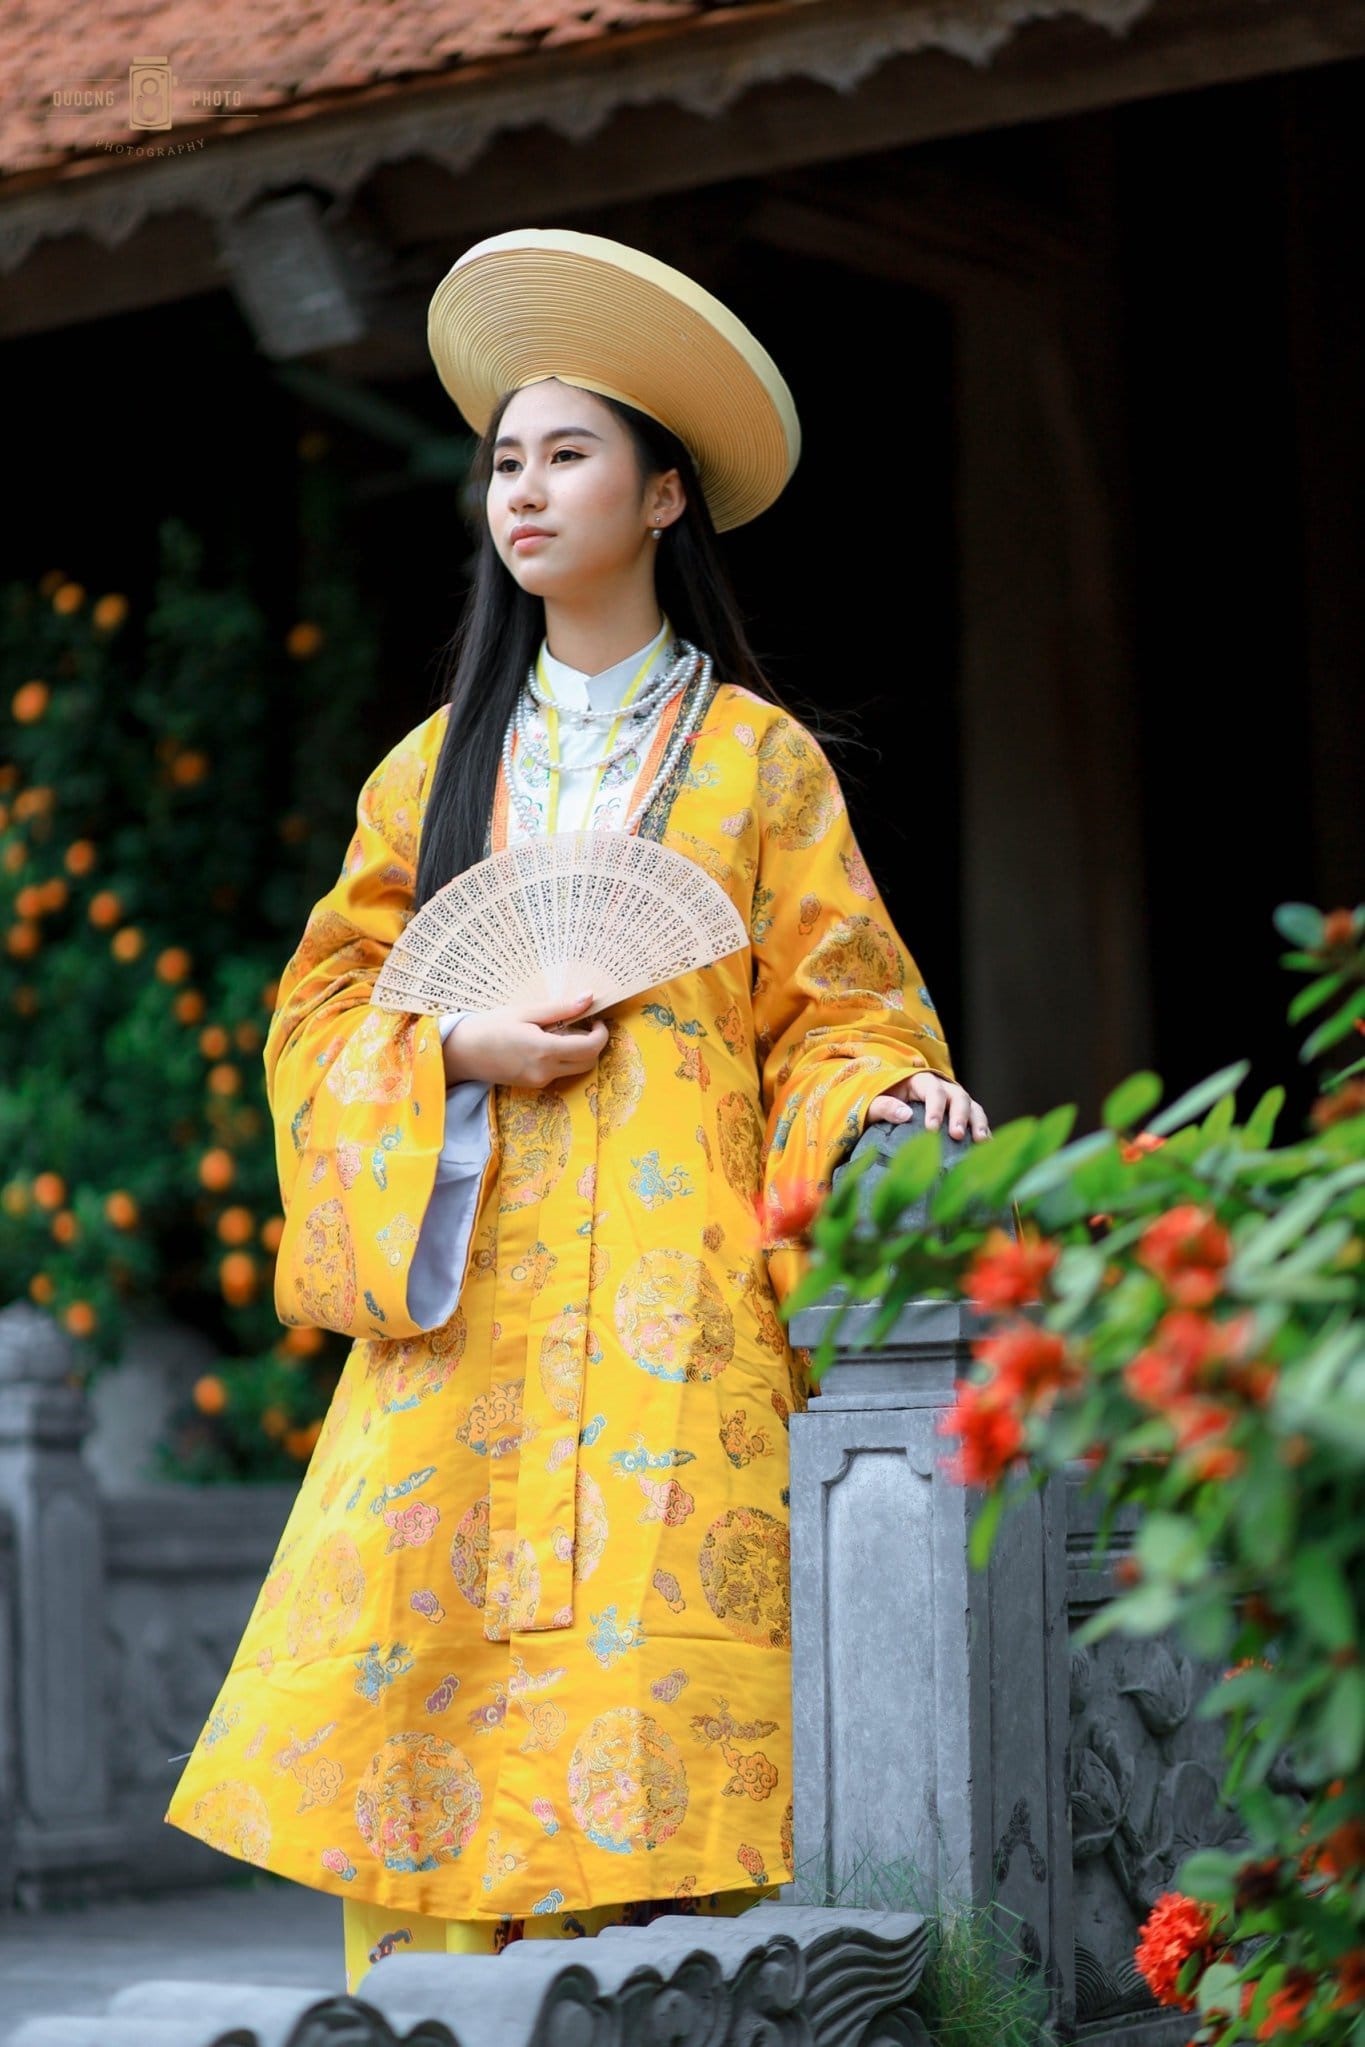 Hiện tại, vào trưa 15.6, người đẹp Nguyễn Trang Nguyệt Minh đã nhập cuộc với gần 40 nhan sắc đến từ các quốc gia và vùng lãnh thổ.